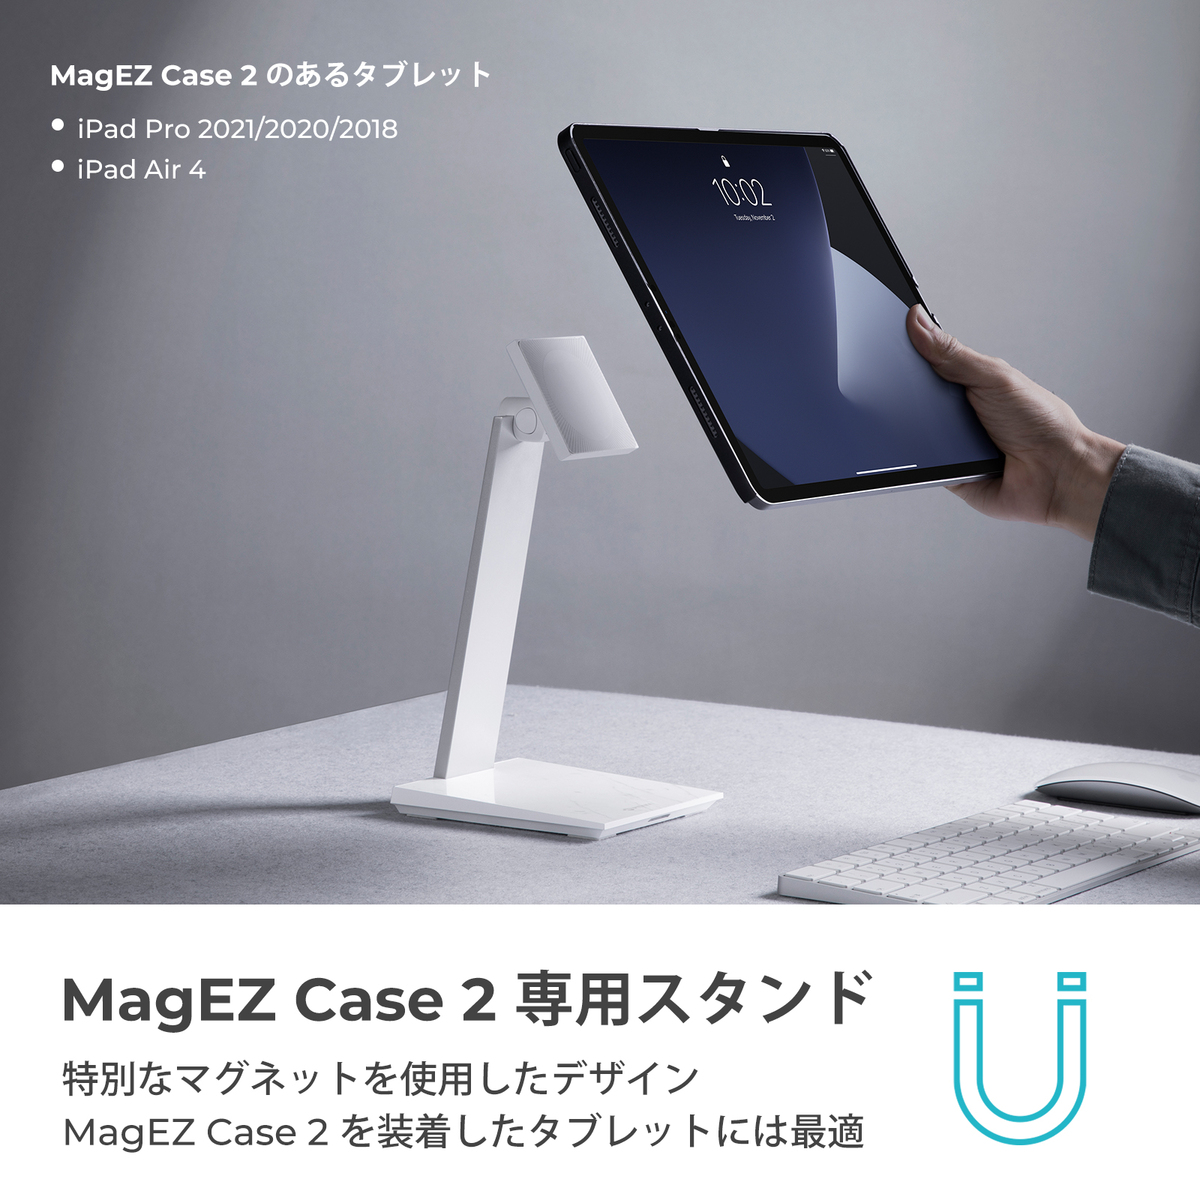 磁気タブレットスタンド 磁気ipadスタンド 滑り止め PITAKA MagEZ Stand MagEZ Case2専用スタンドホルダー  スマホ充電ベース ワイヤレス充電スタンド 360°角度調整可能 マグネットタブレット 置き台 卓上スタンド iPad対応（大理石）在宅勤務グッズ |  